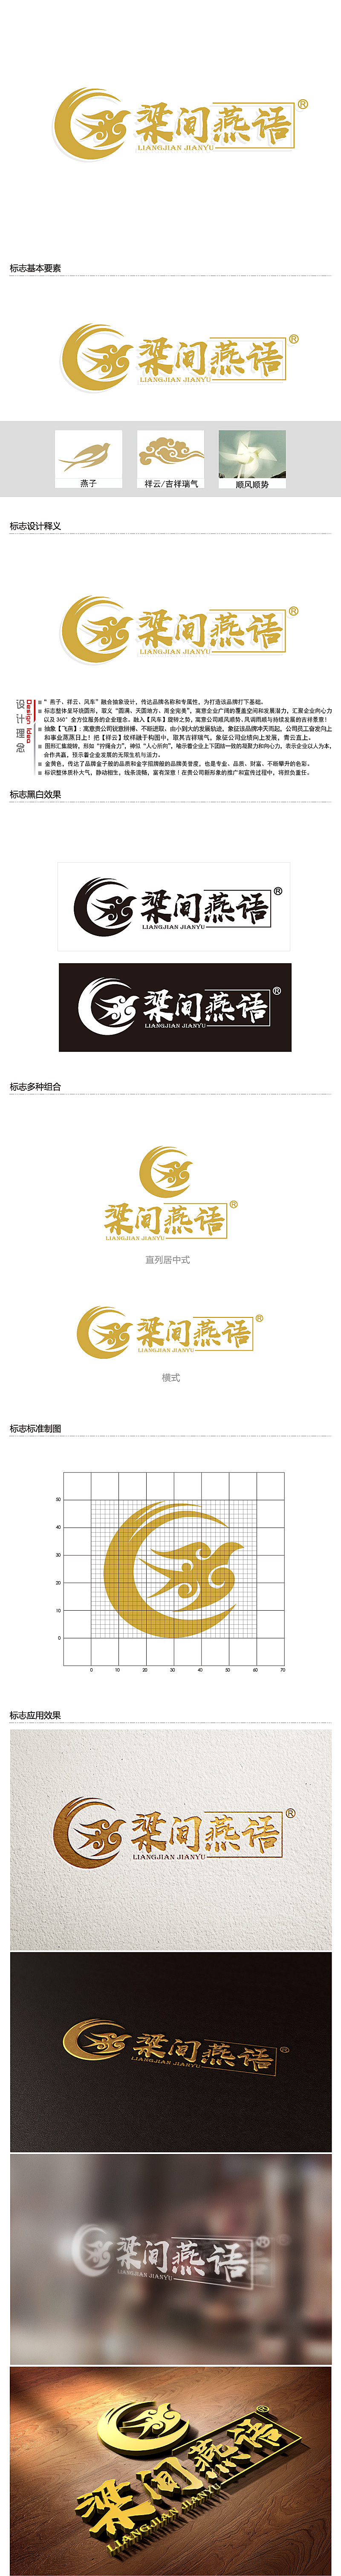 黎明锋的梁间燕语食品销售logo设计